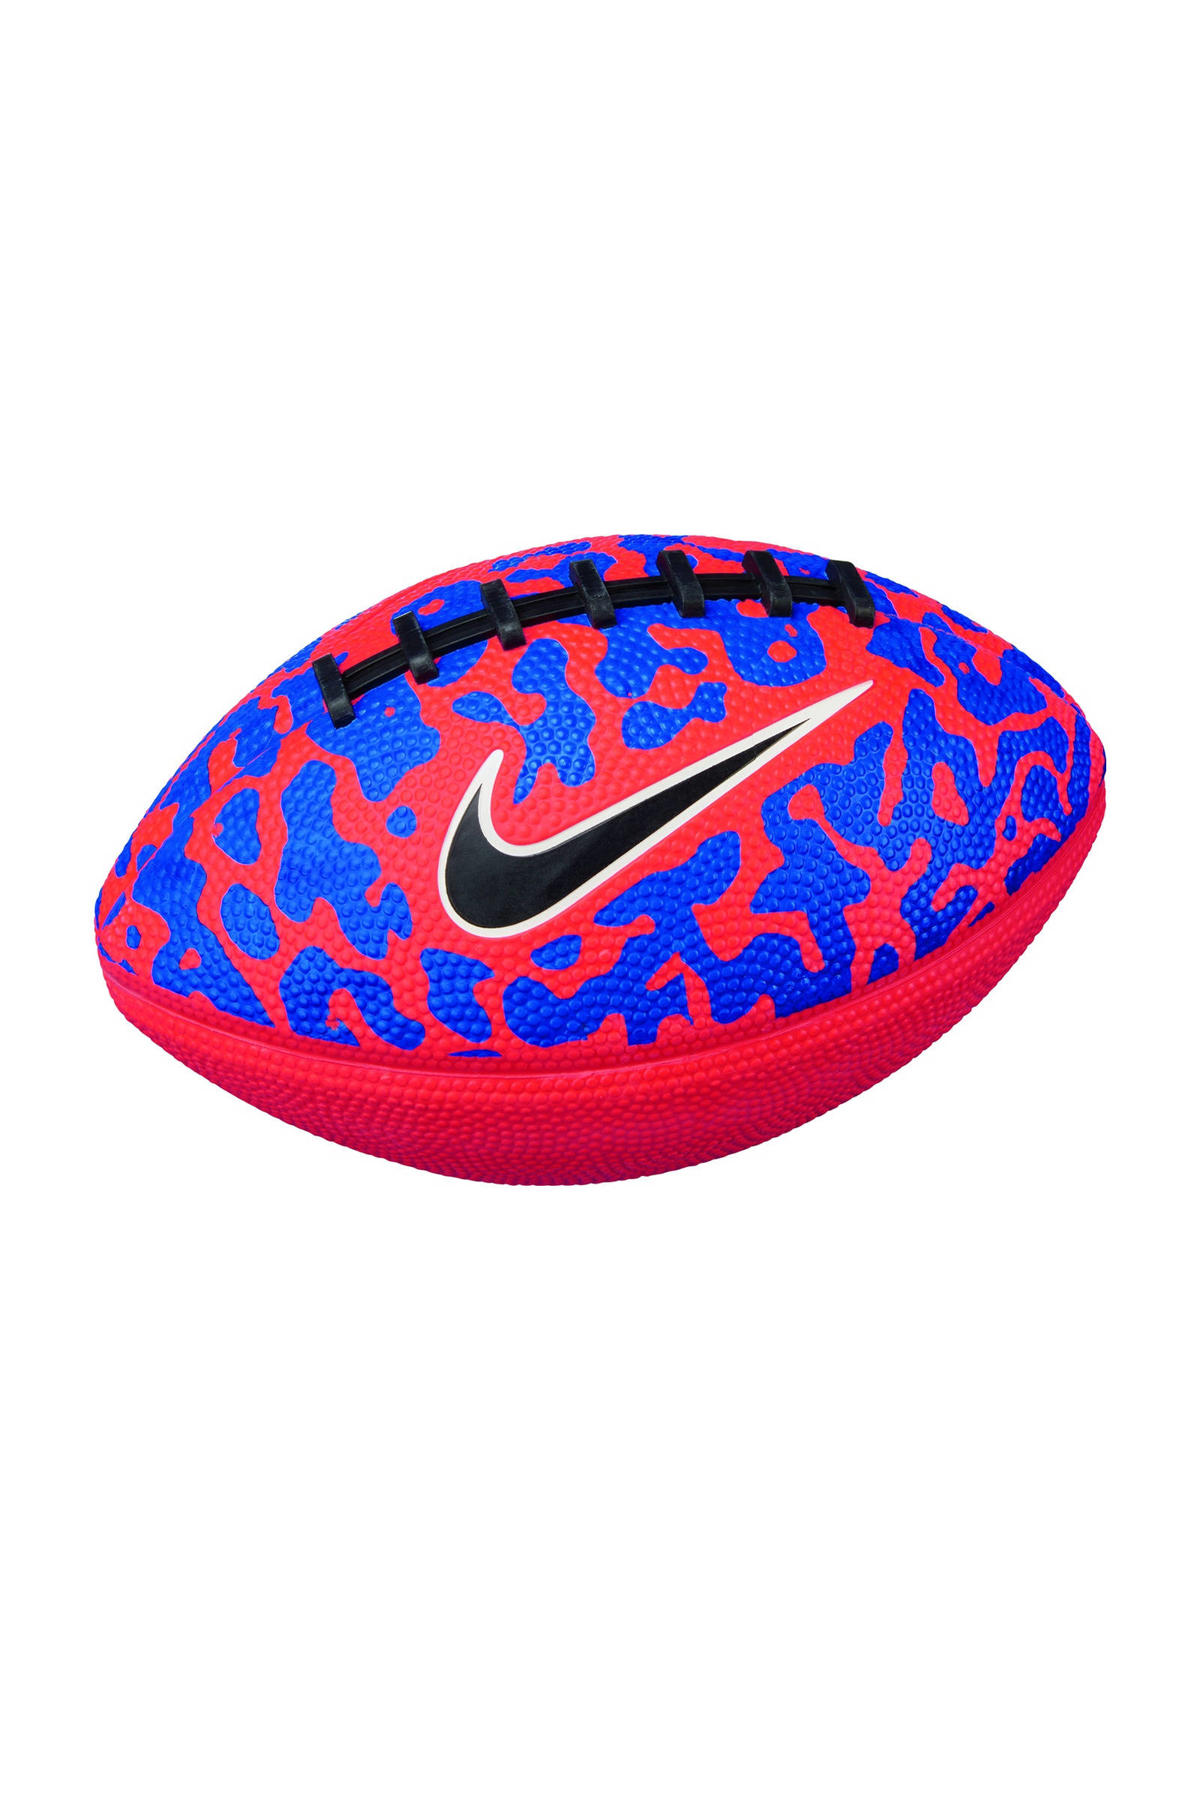 Marty Fielding Haan Uitreiken Nike Mini Spin 4.0 rugbybal - maat 5 | wehkamp